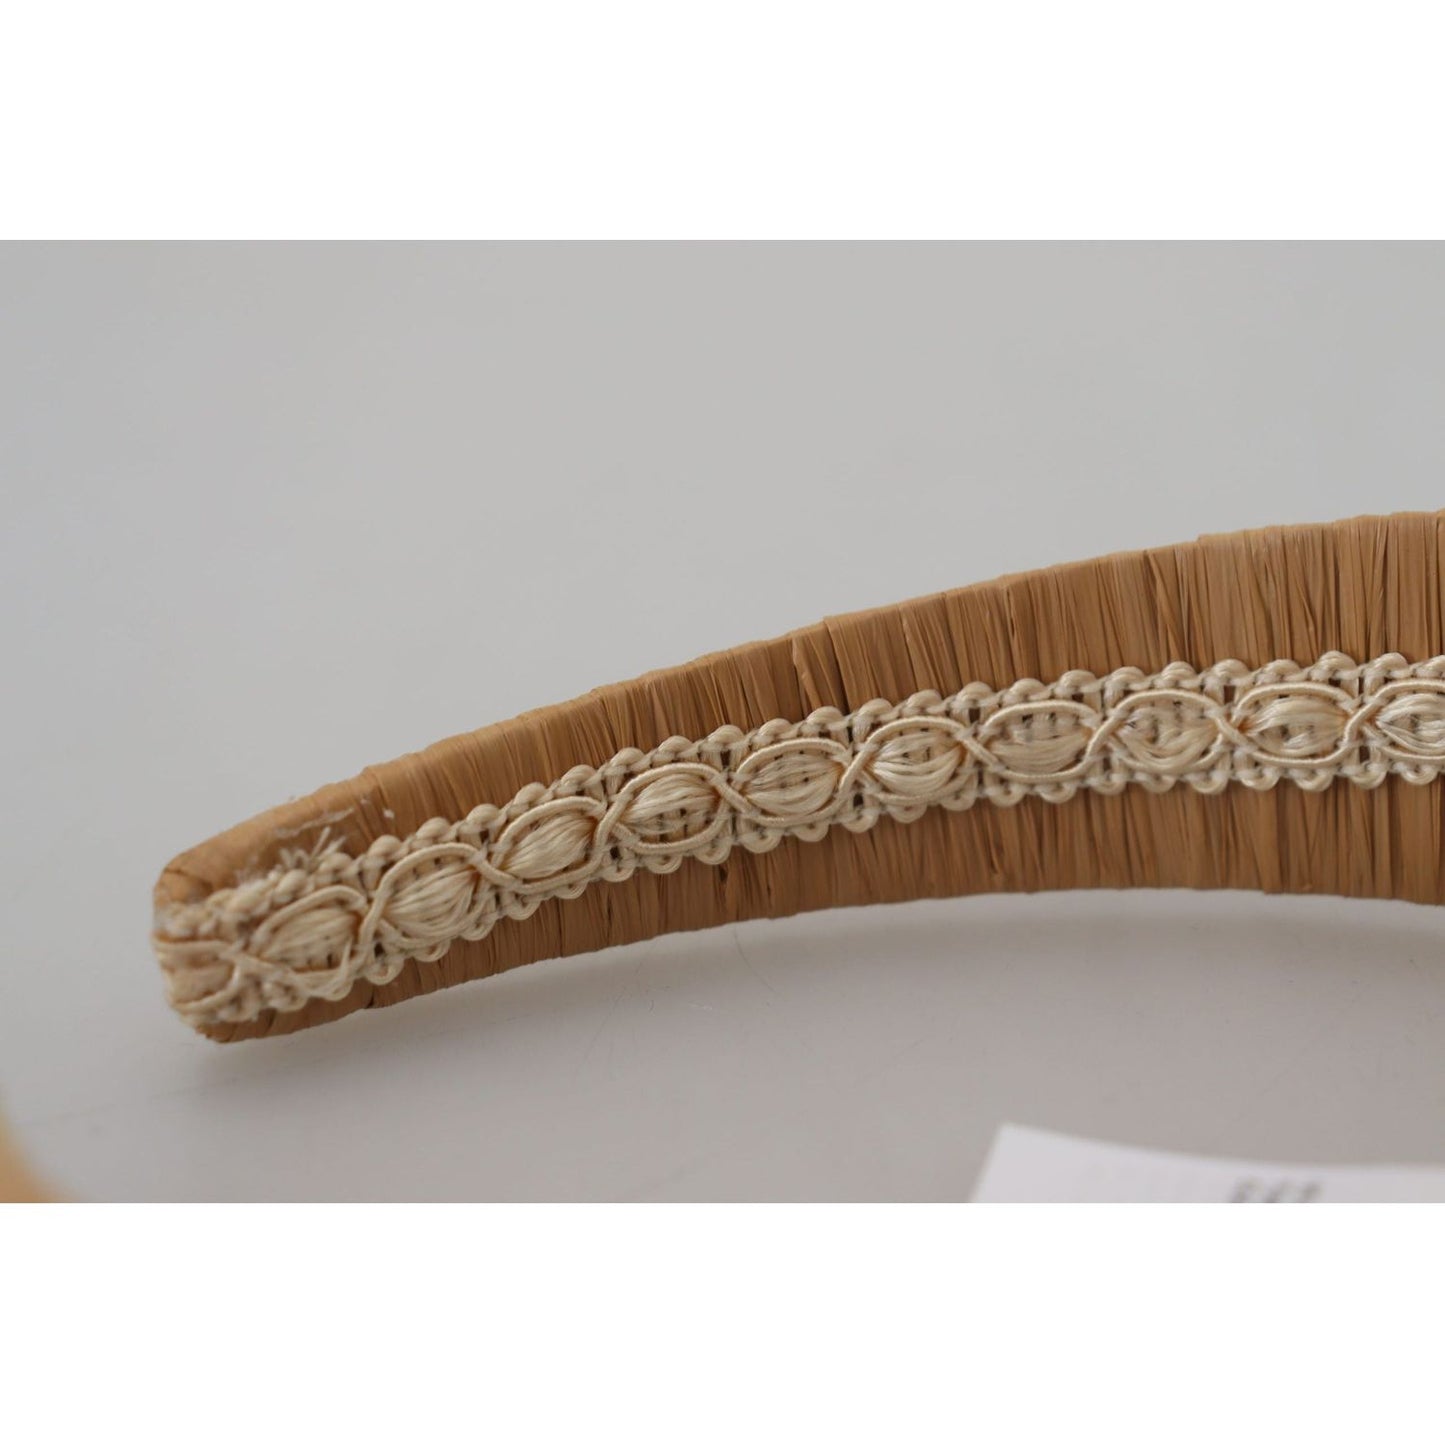 Dolce & Gabbana Exquisite Beige Viscose Diadem Headband beige-viscose-women-hair-headband-diadem IMG_4169-scaled-c6b7b0c6-333.jpg